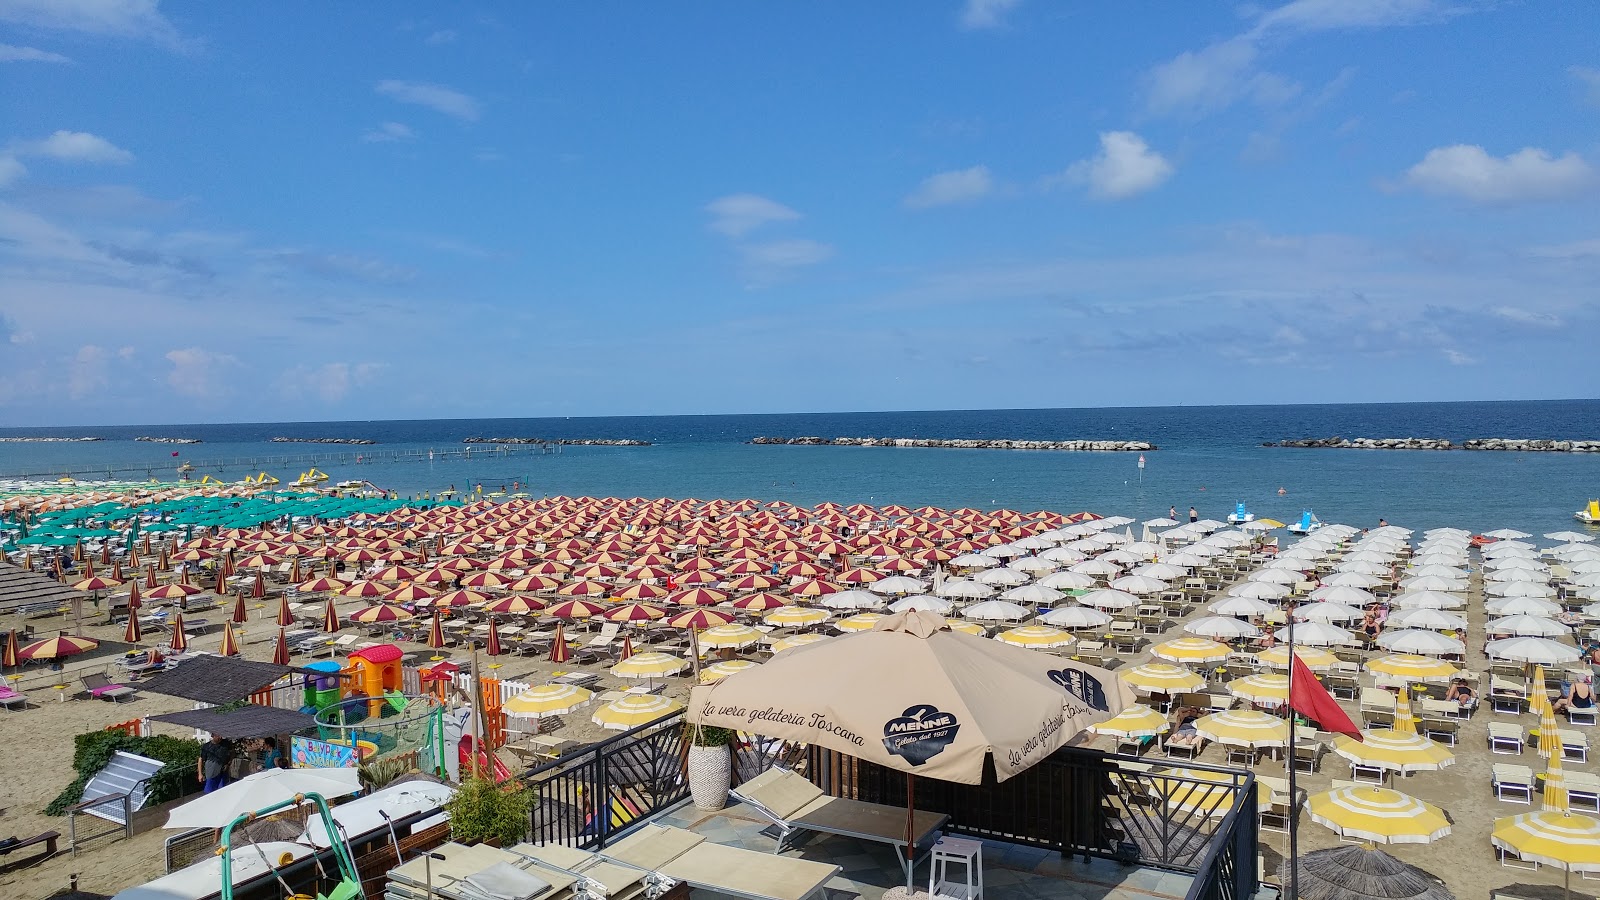 Zdjęcie Spiaggia di Gatteo Mare obszar kurortu nadmorskiego